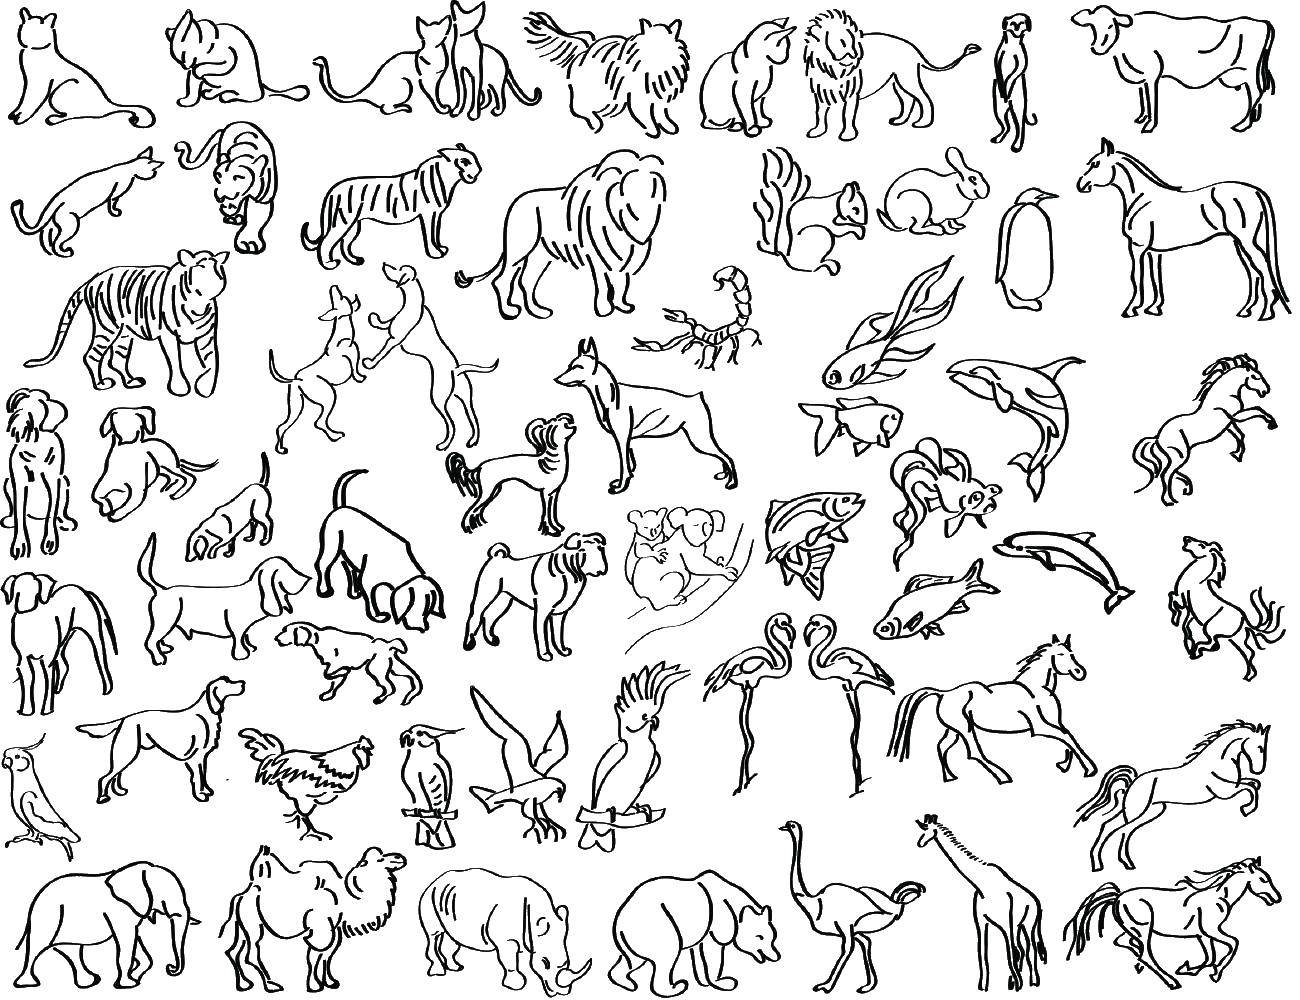 Животные контур: векторные изображения и иллюстрации, которые можно скачать бесплатно | Freepik